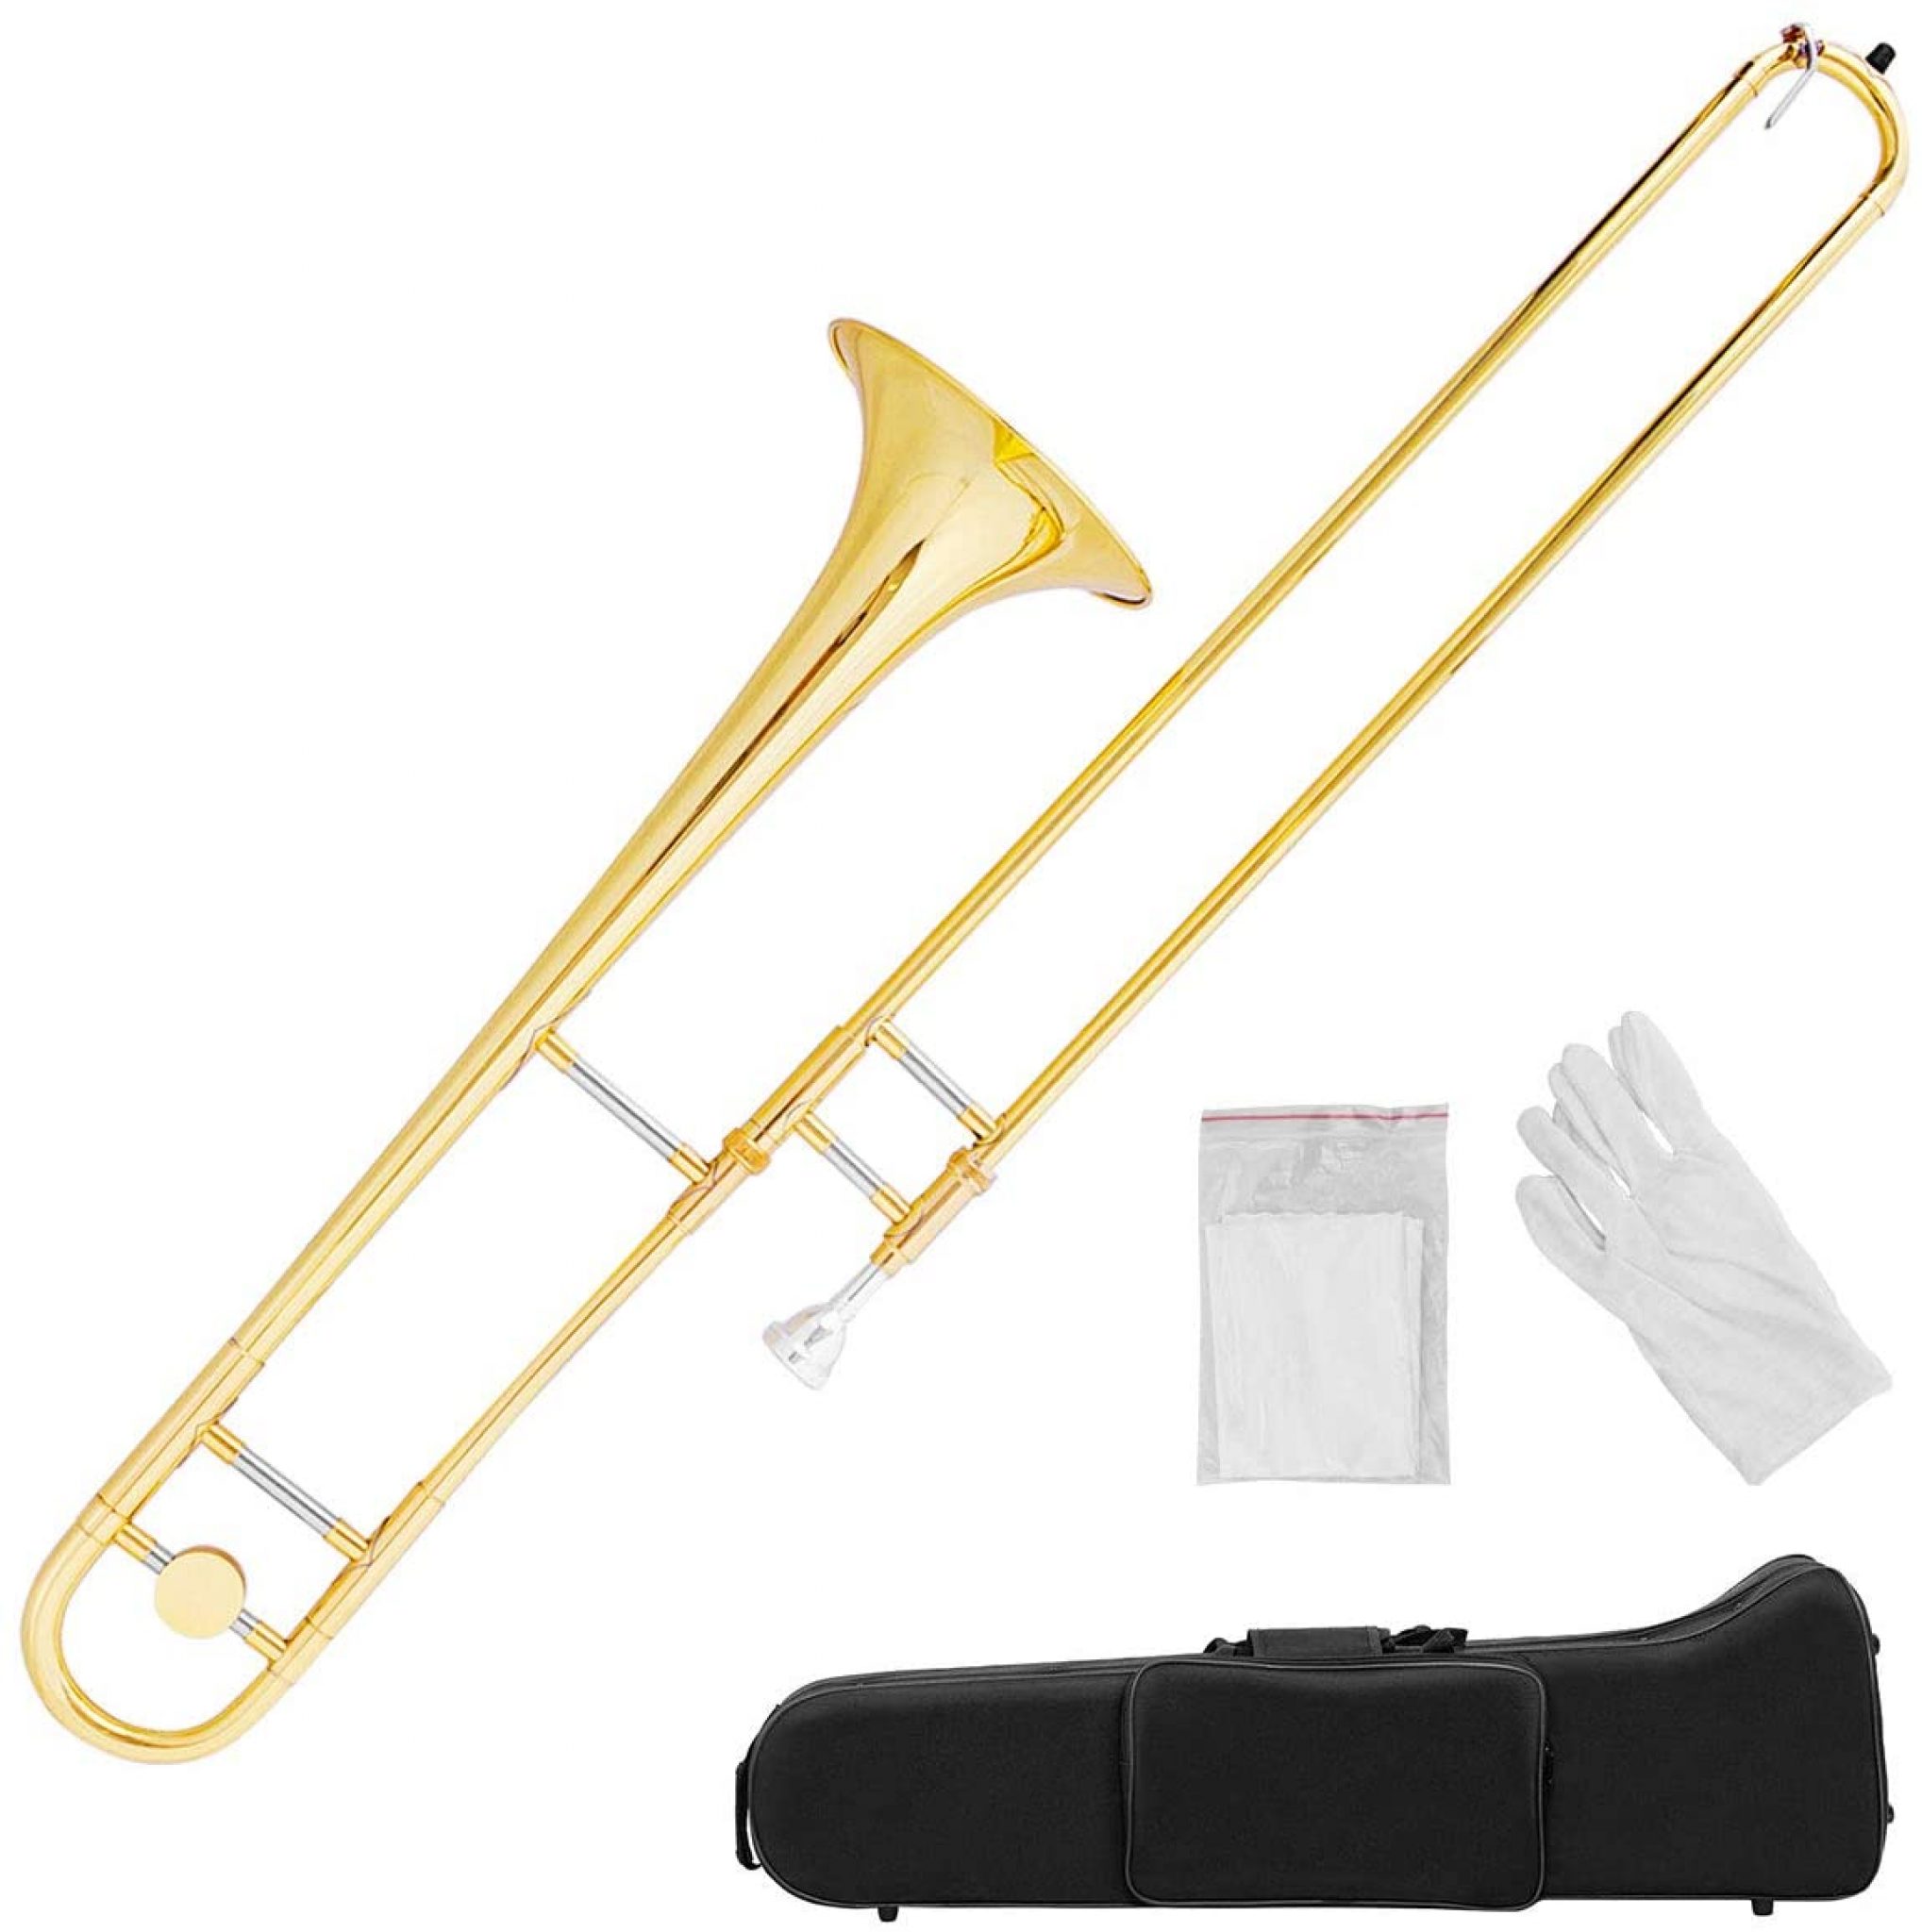 trombone position chart for beginners